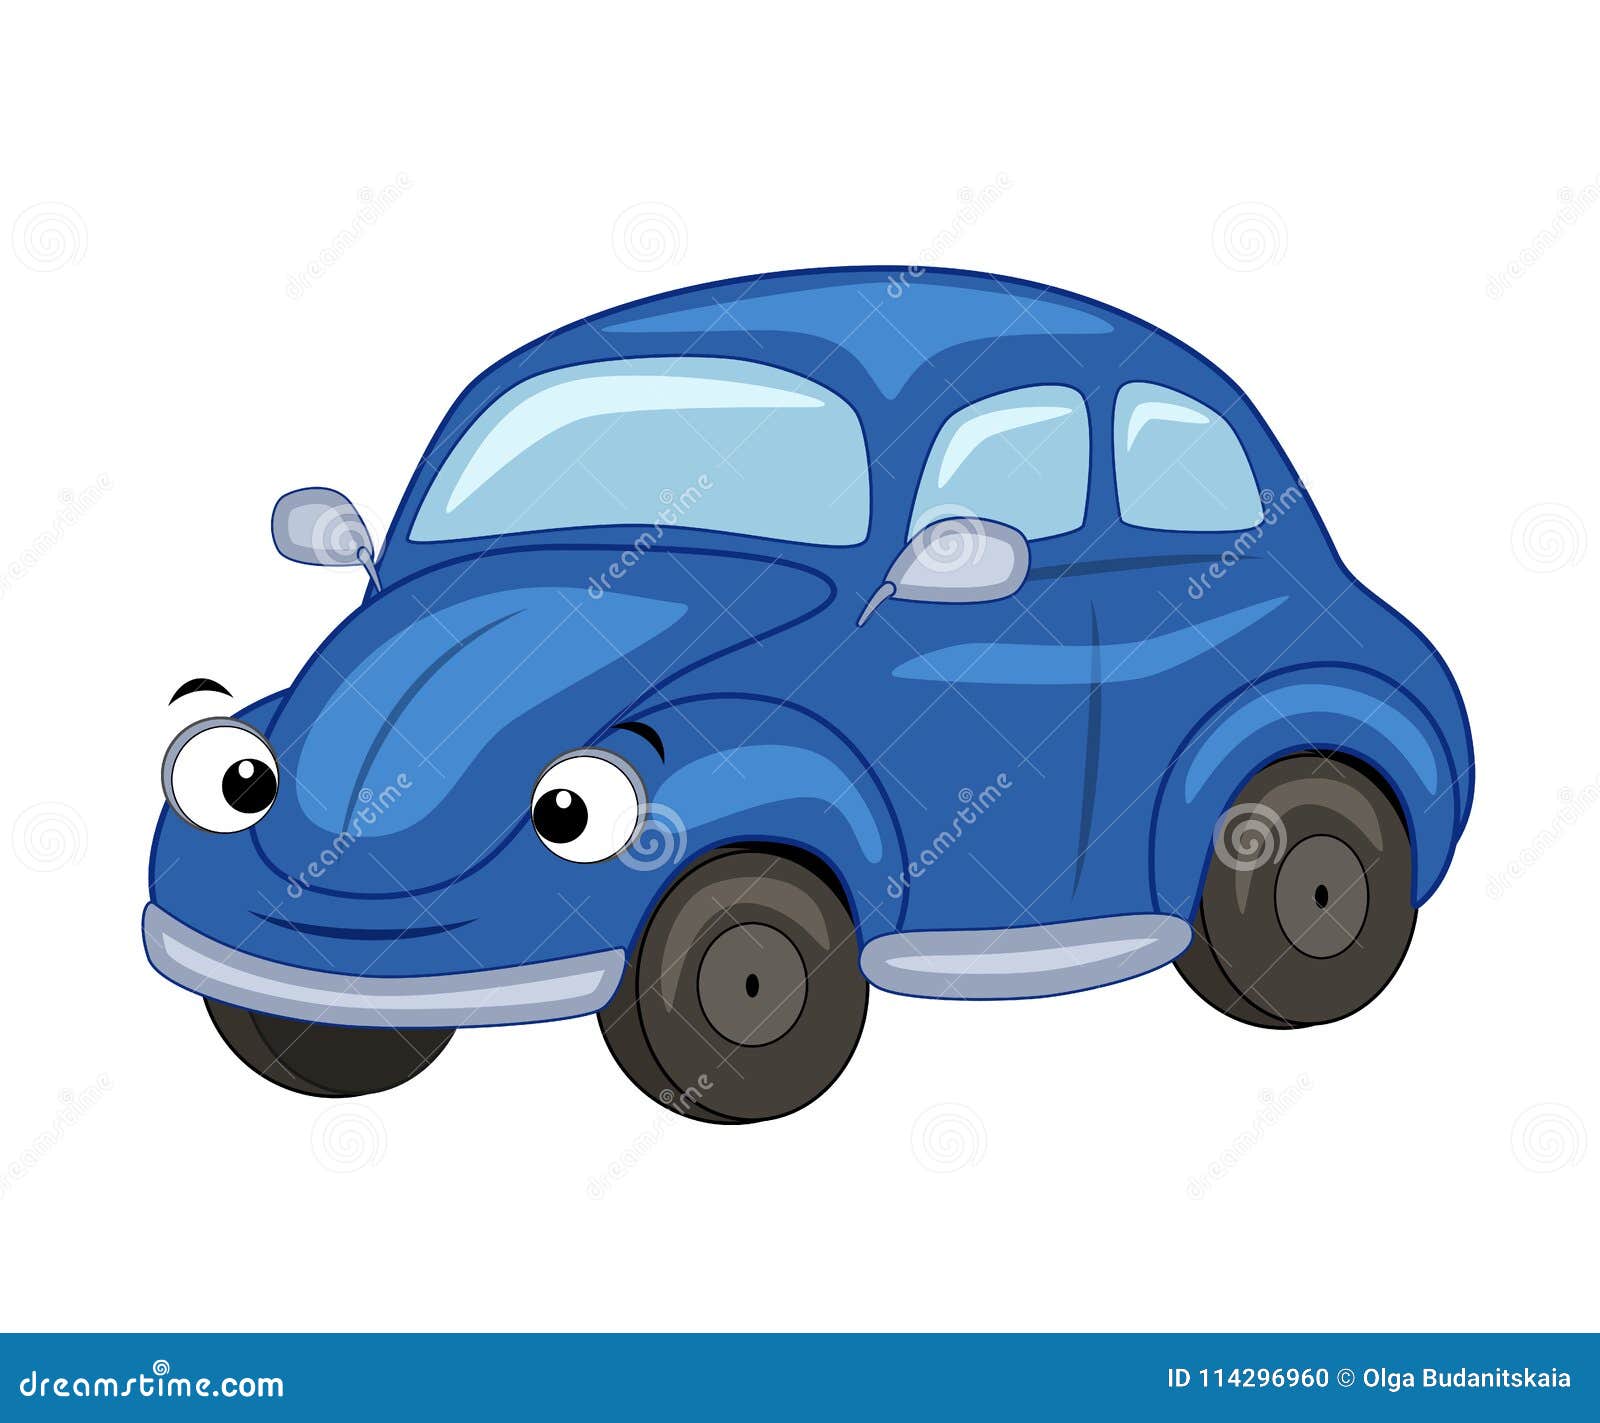 Синяя машинка для детей. Синяя машина для детей. Автомобиль для детей мультяшная. Синий мультяшный автомобиль. Машинки с глазками.